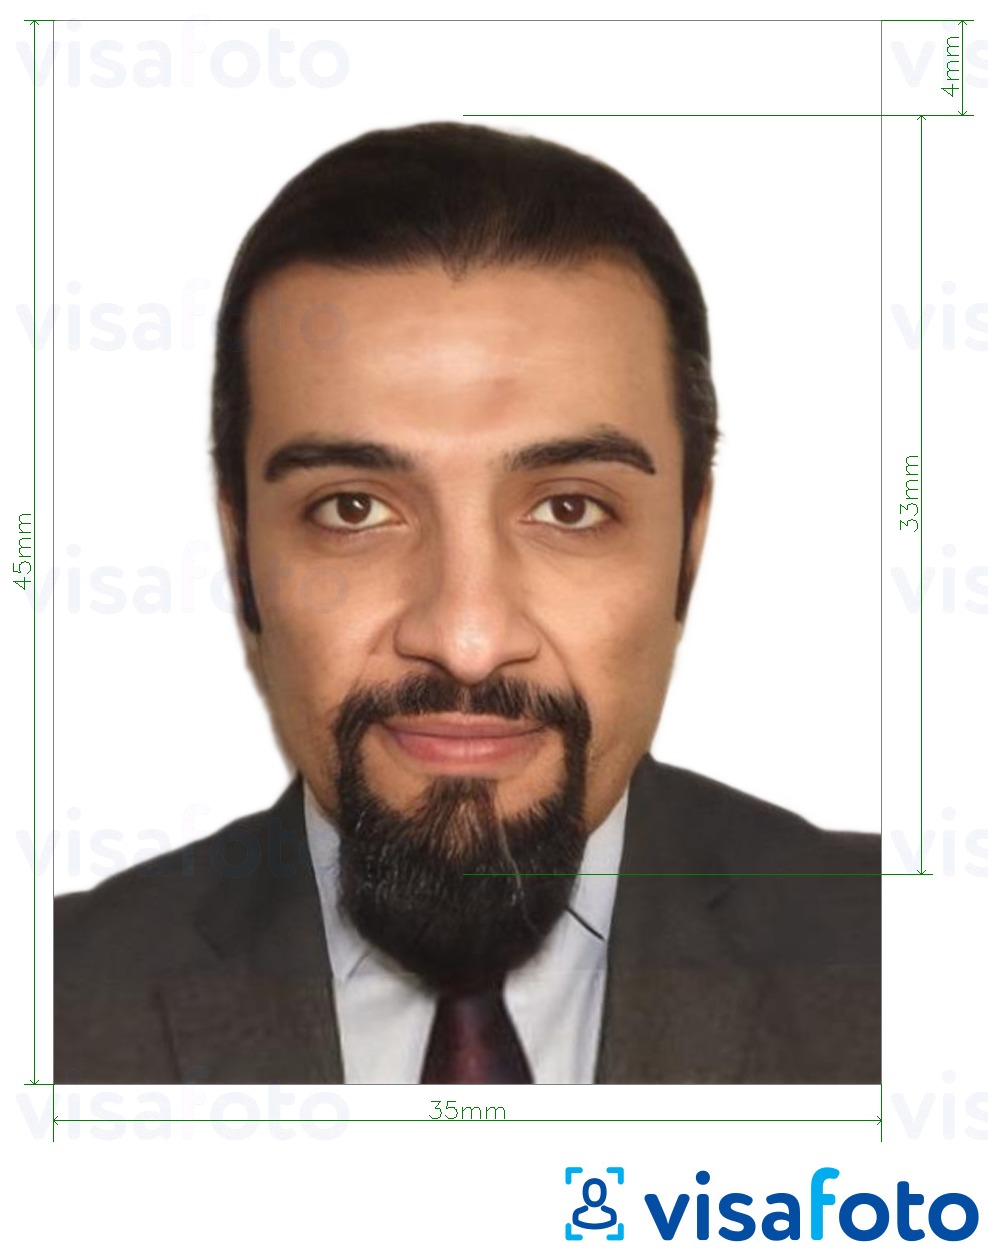 Fotobeispiel für Tunesien ID Karte 3,5x4,5 cm (35x45 mm) mit genauer größenangabe